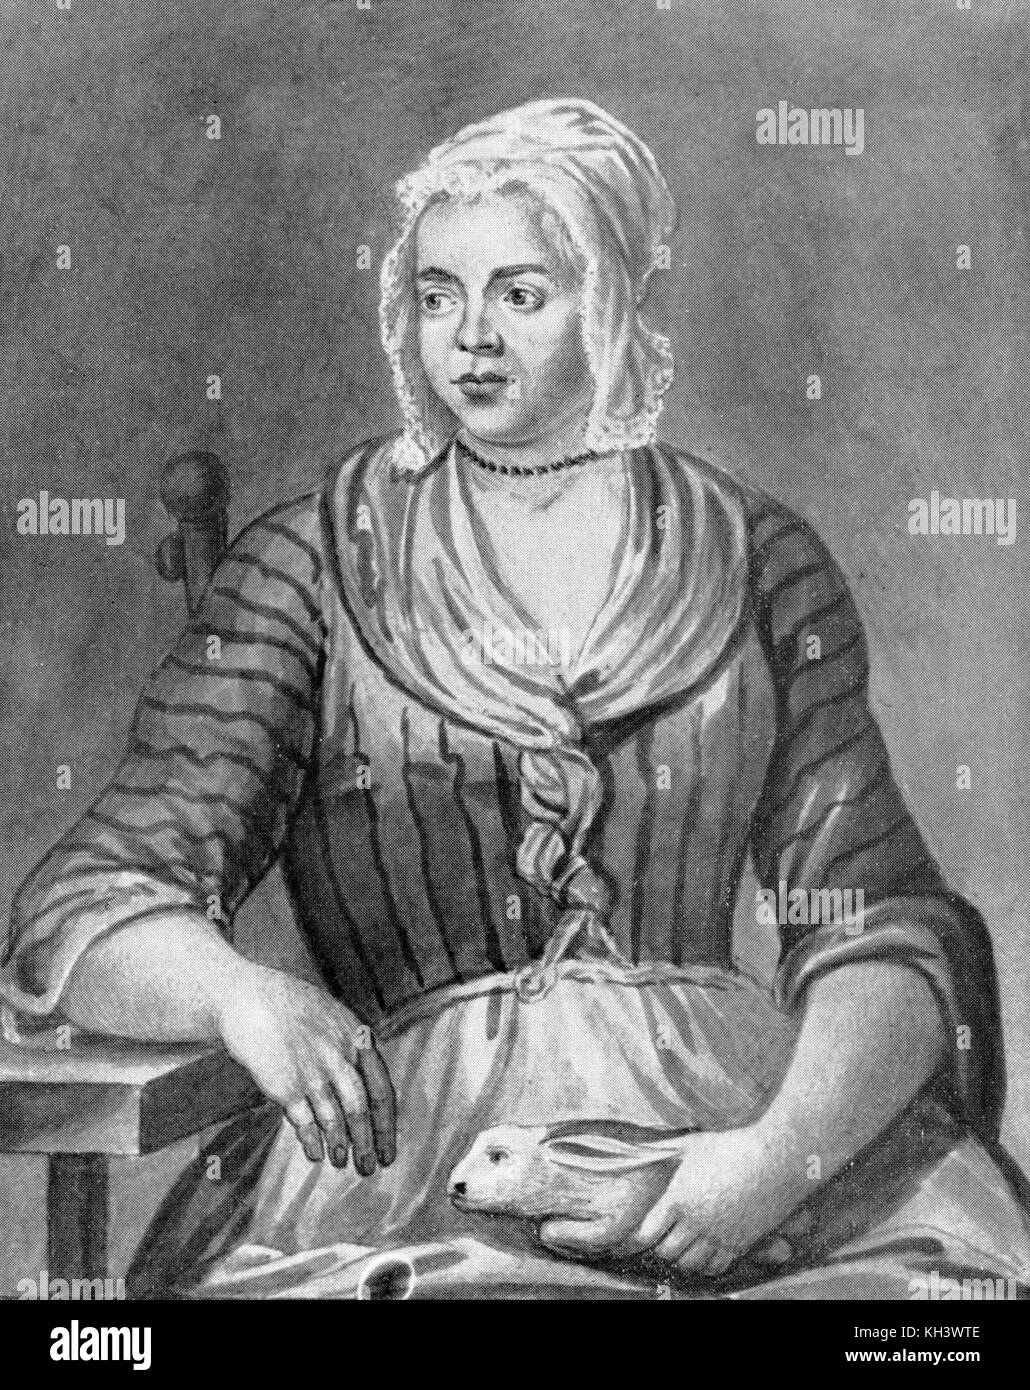 Mary toft, mujer inglesa de Godalming, Surrey, que en 1726 engañó a los médicos a creer que ella había dado a luz conejos Foto de stock